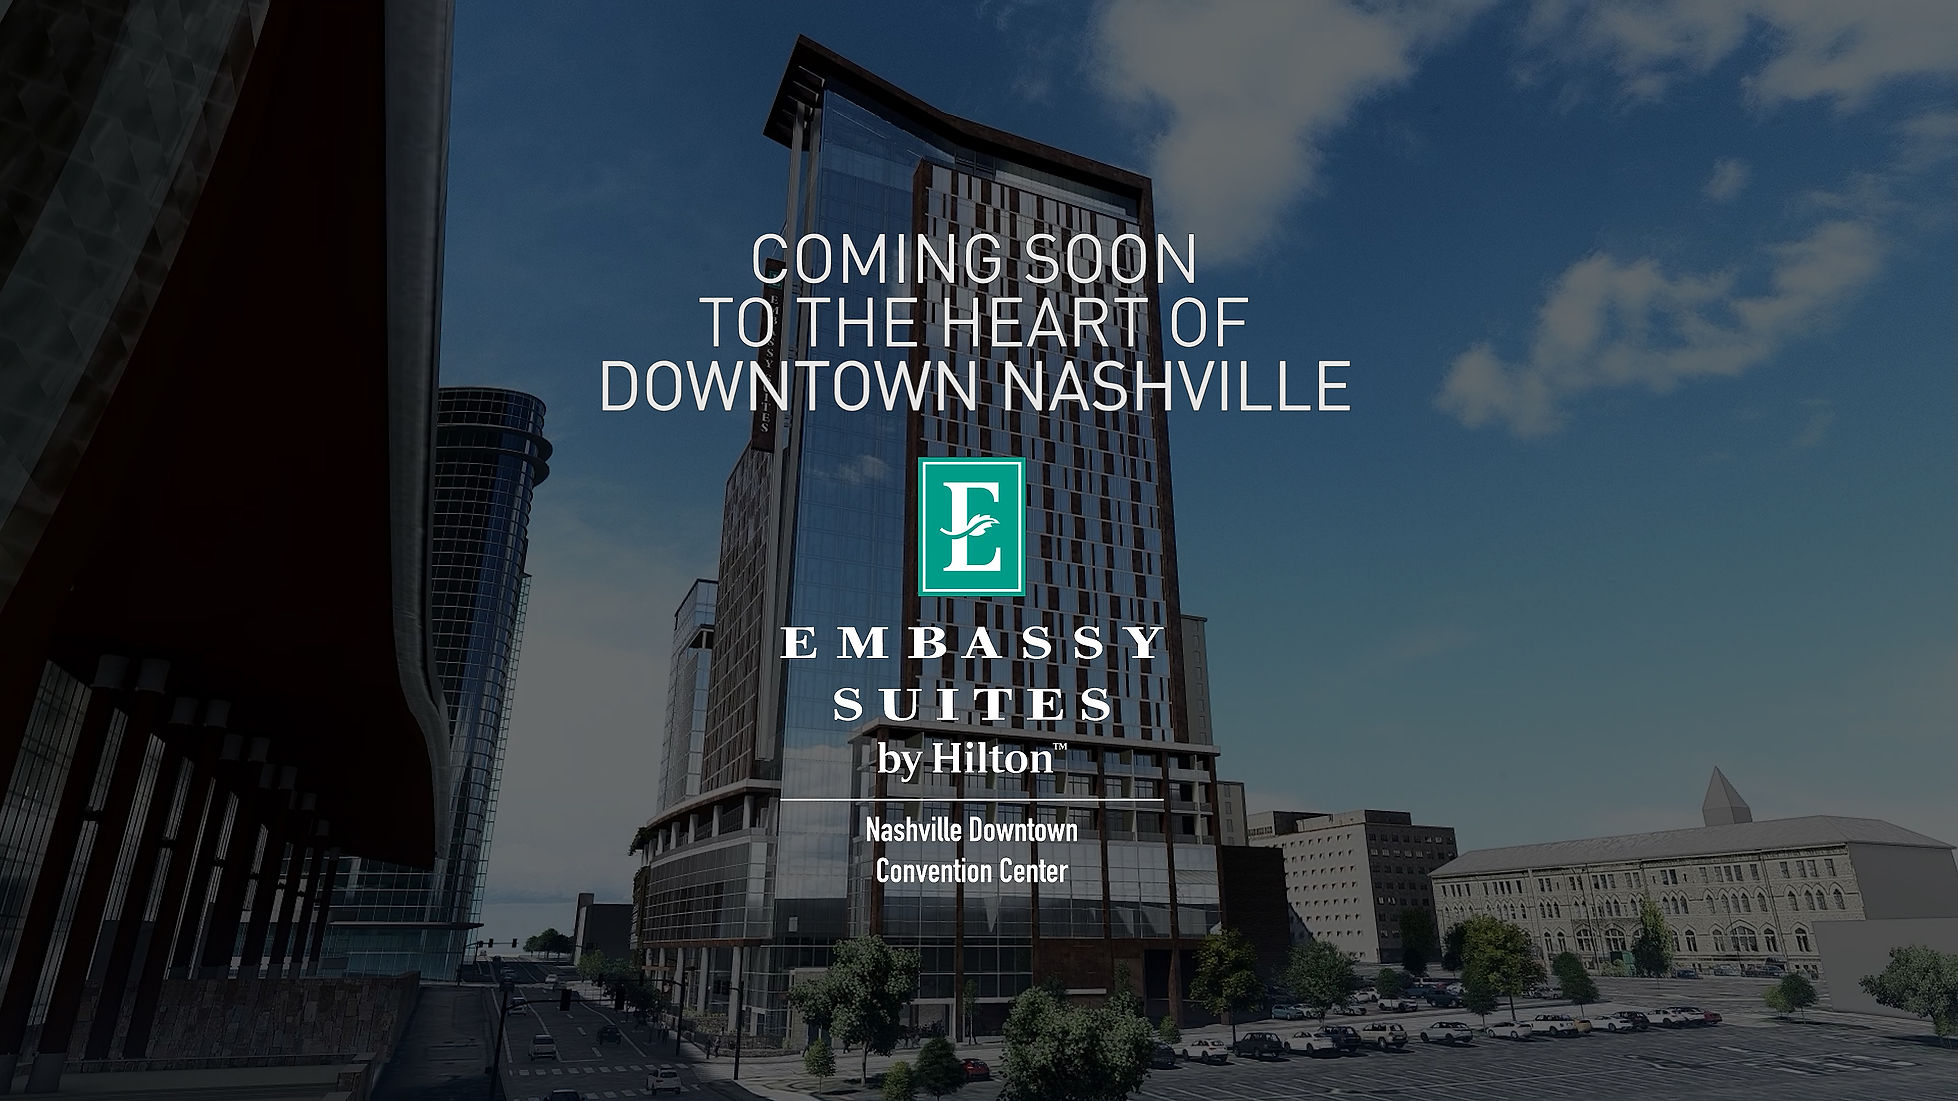 Embassy Suites Nashville - Complete (FINAL) (1)